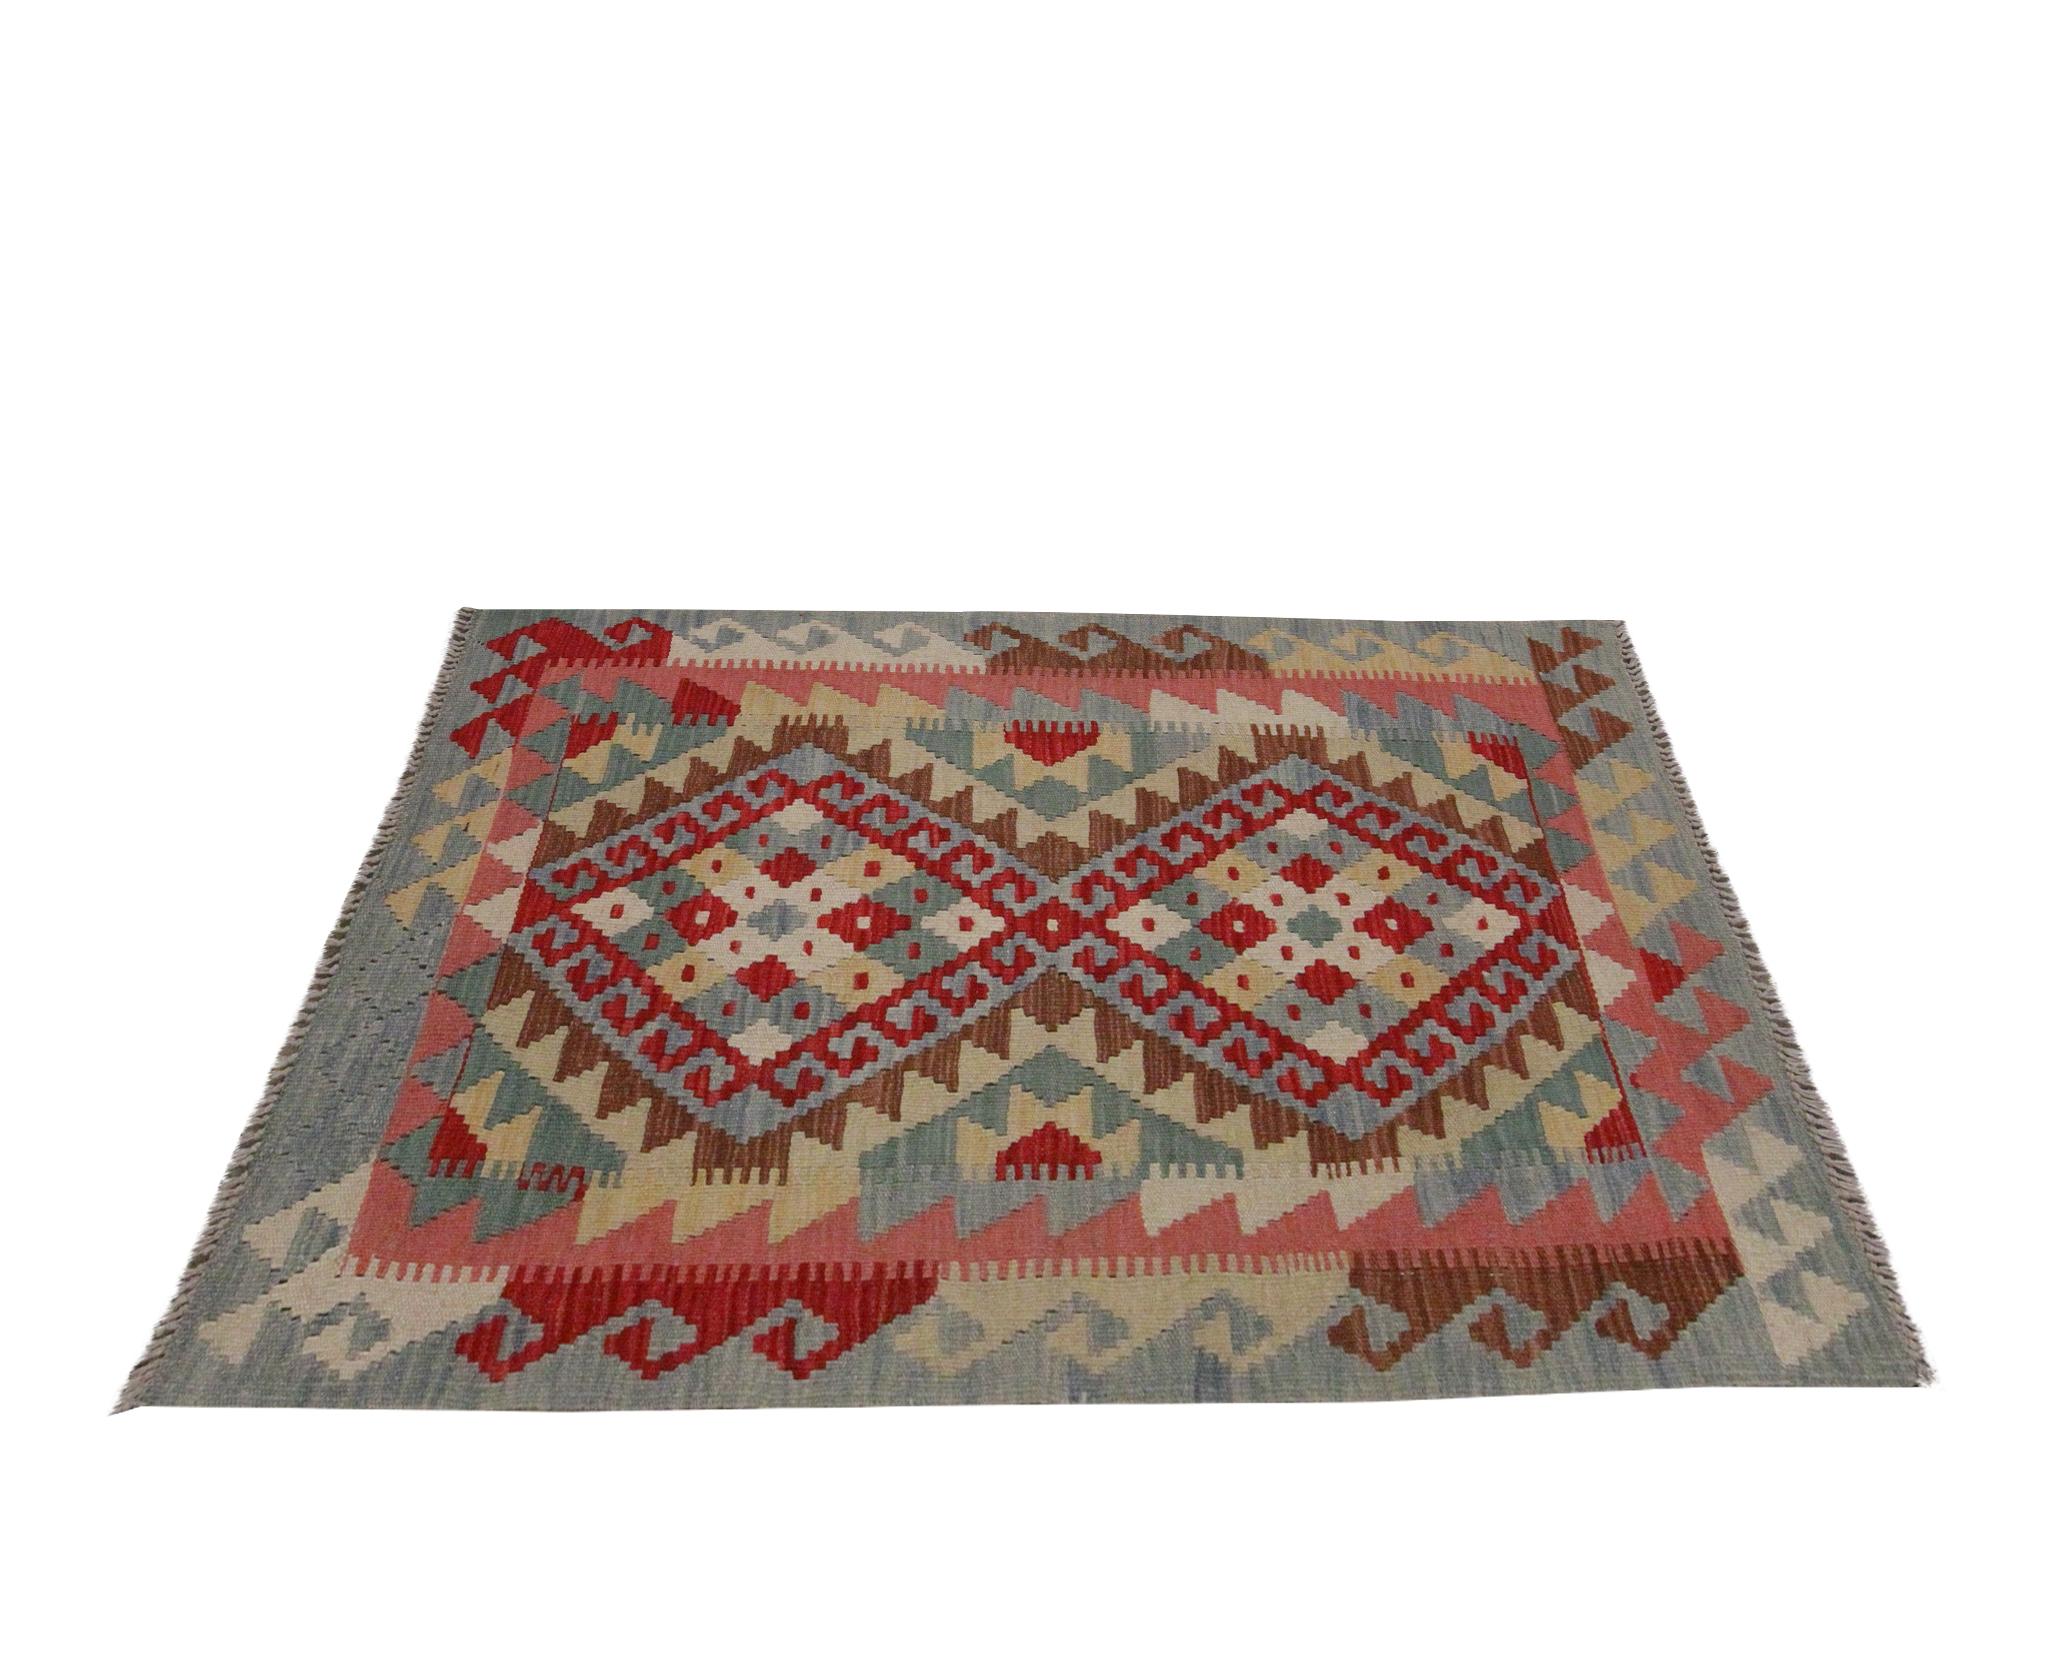 Afghan New Carpet Traditional Handmade Kilim Rug Oriental Wool Blue Red Rug